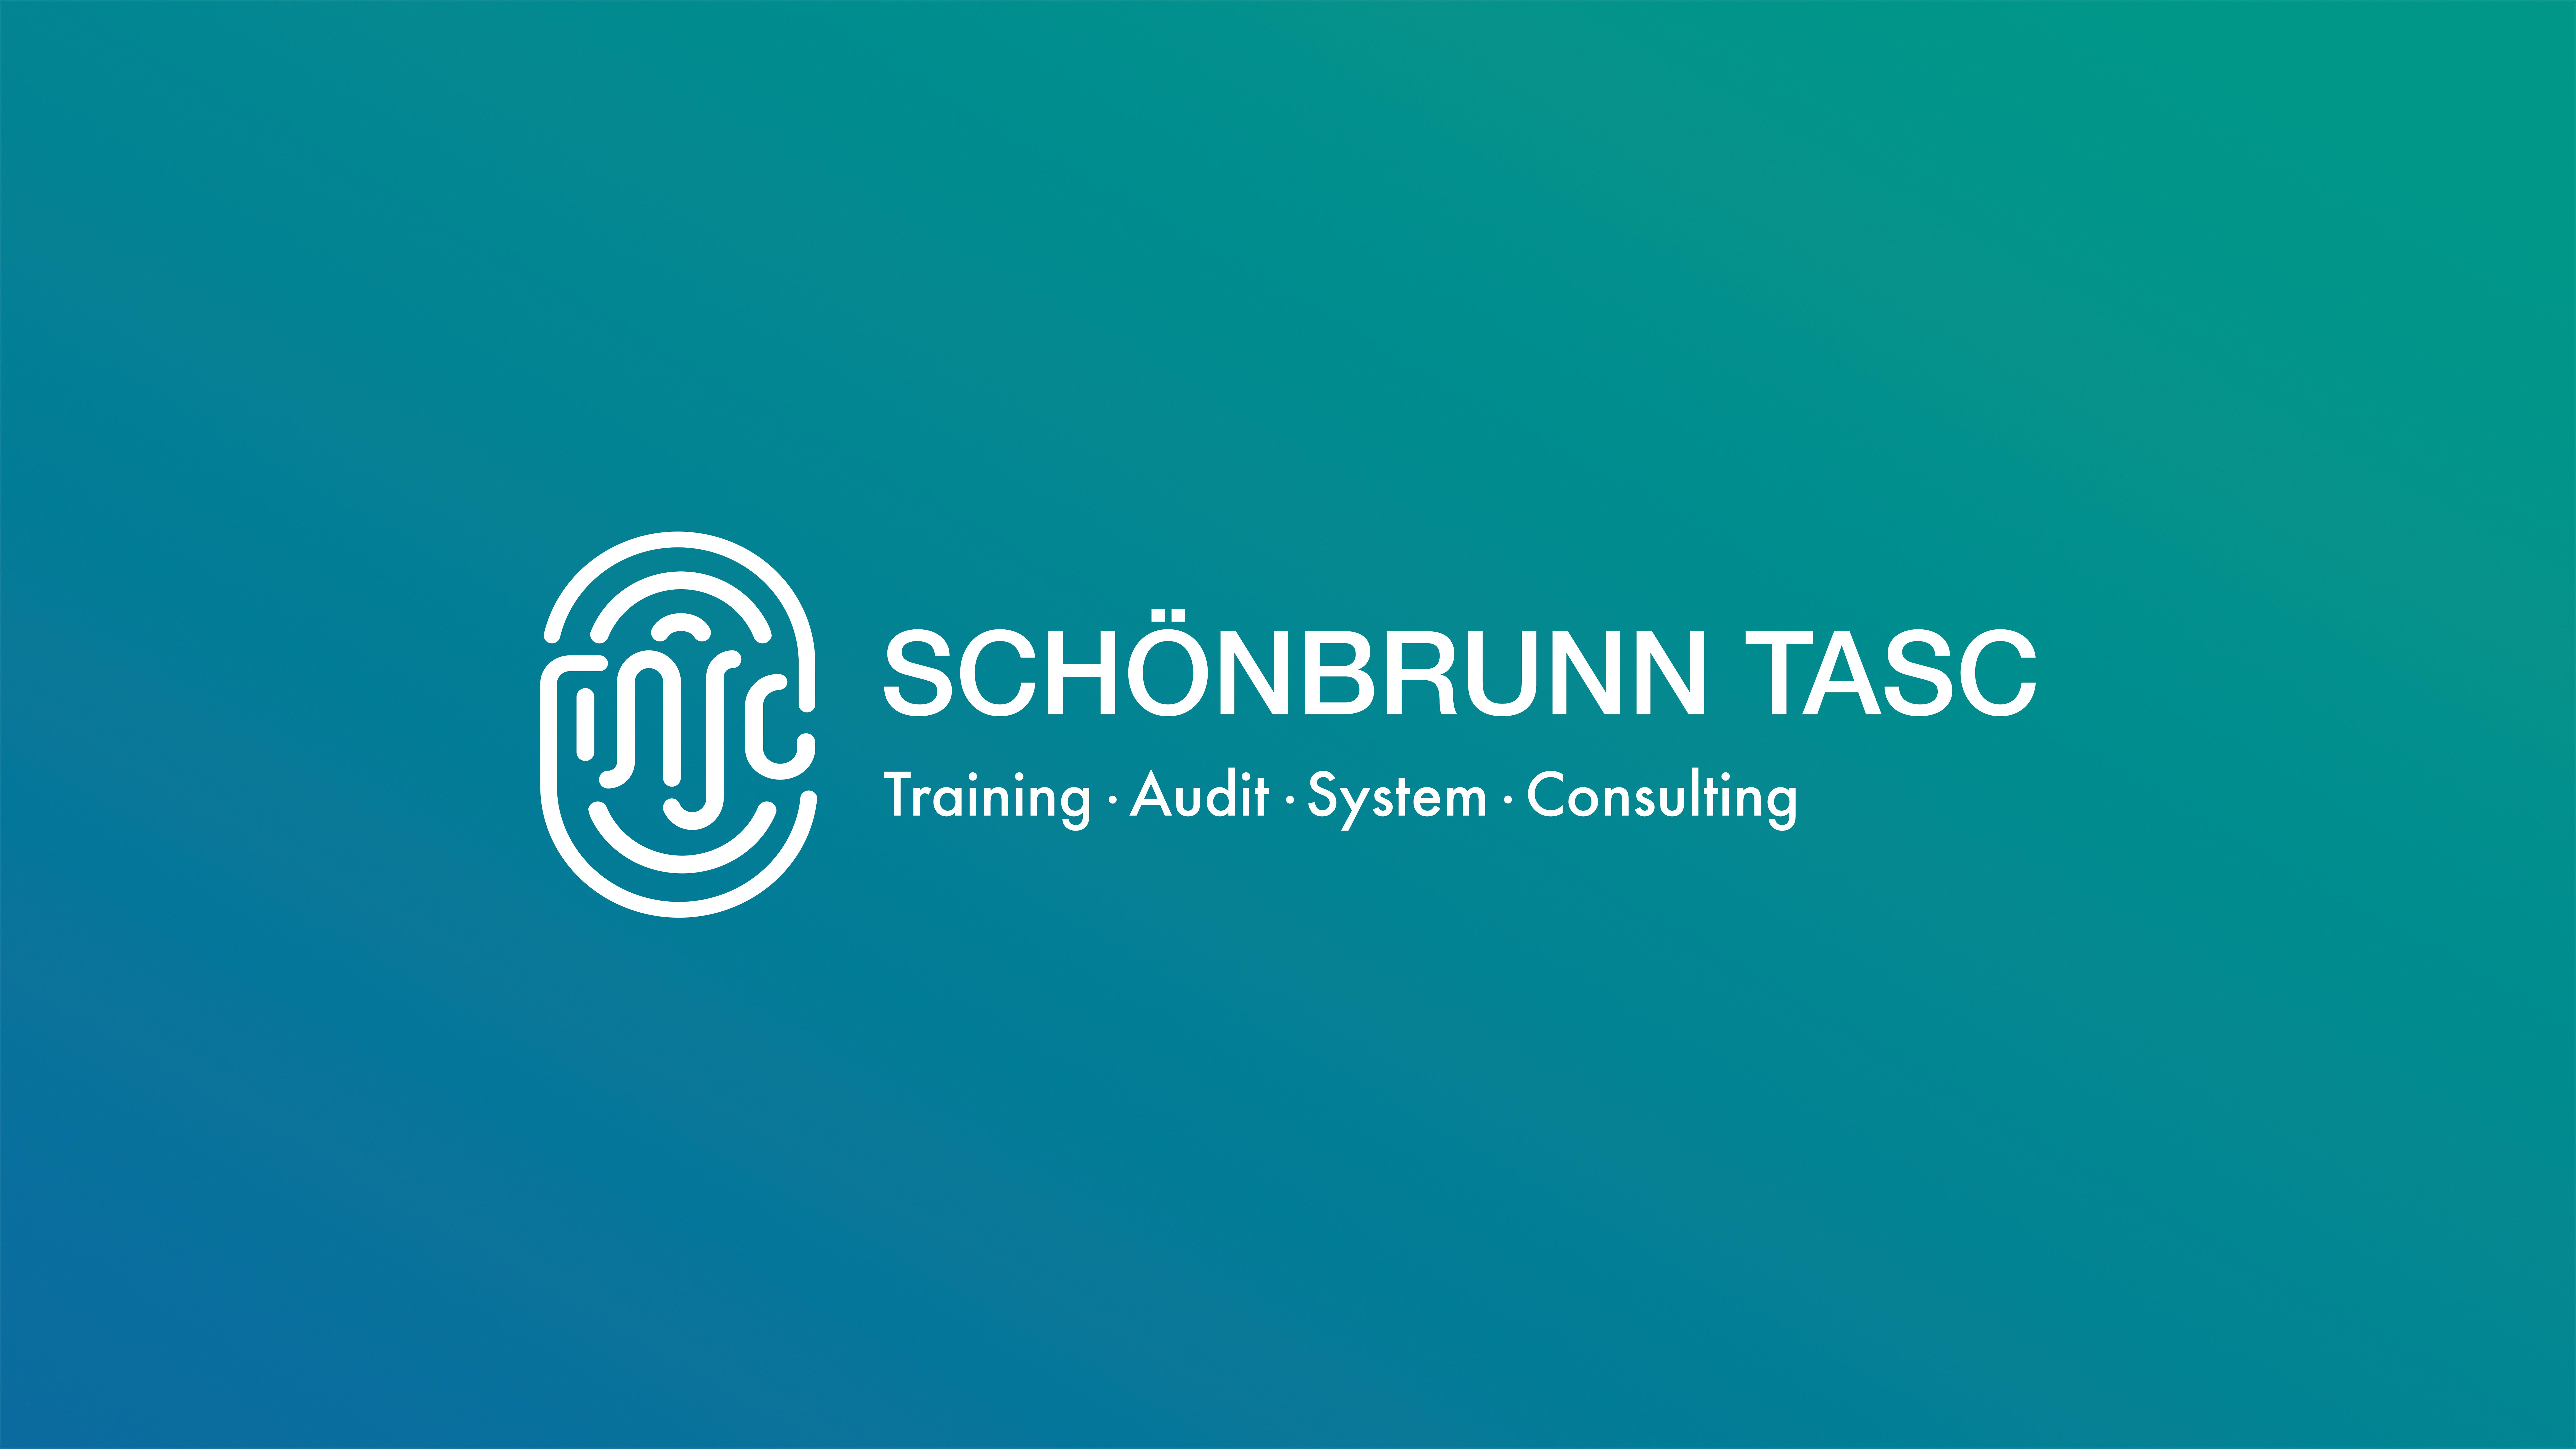 Schönbrunn TASC / startup from Leonberg / Background